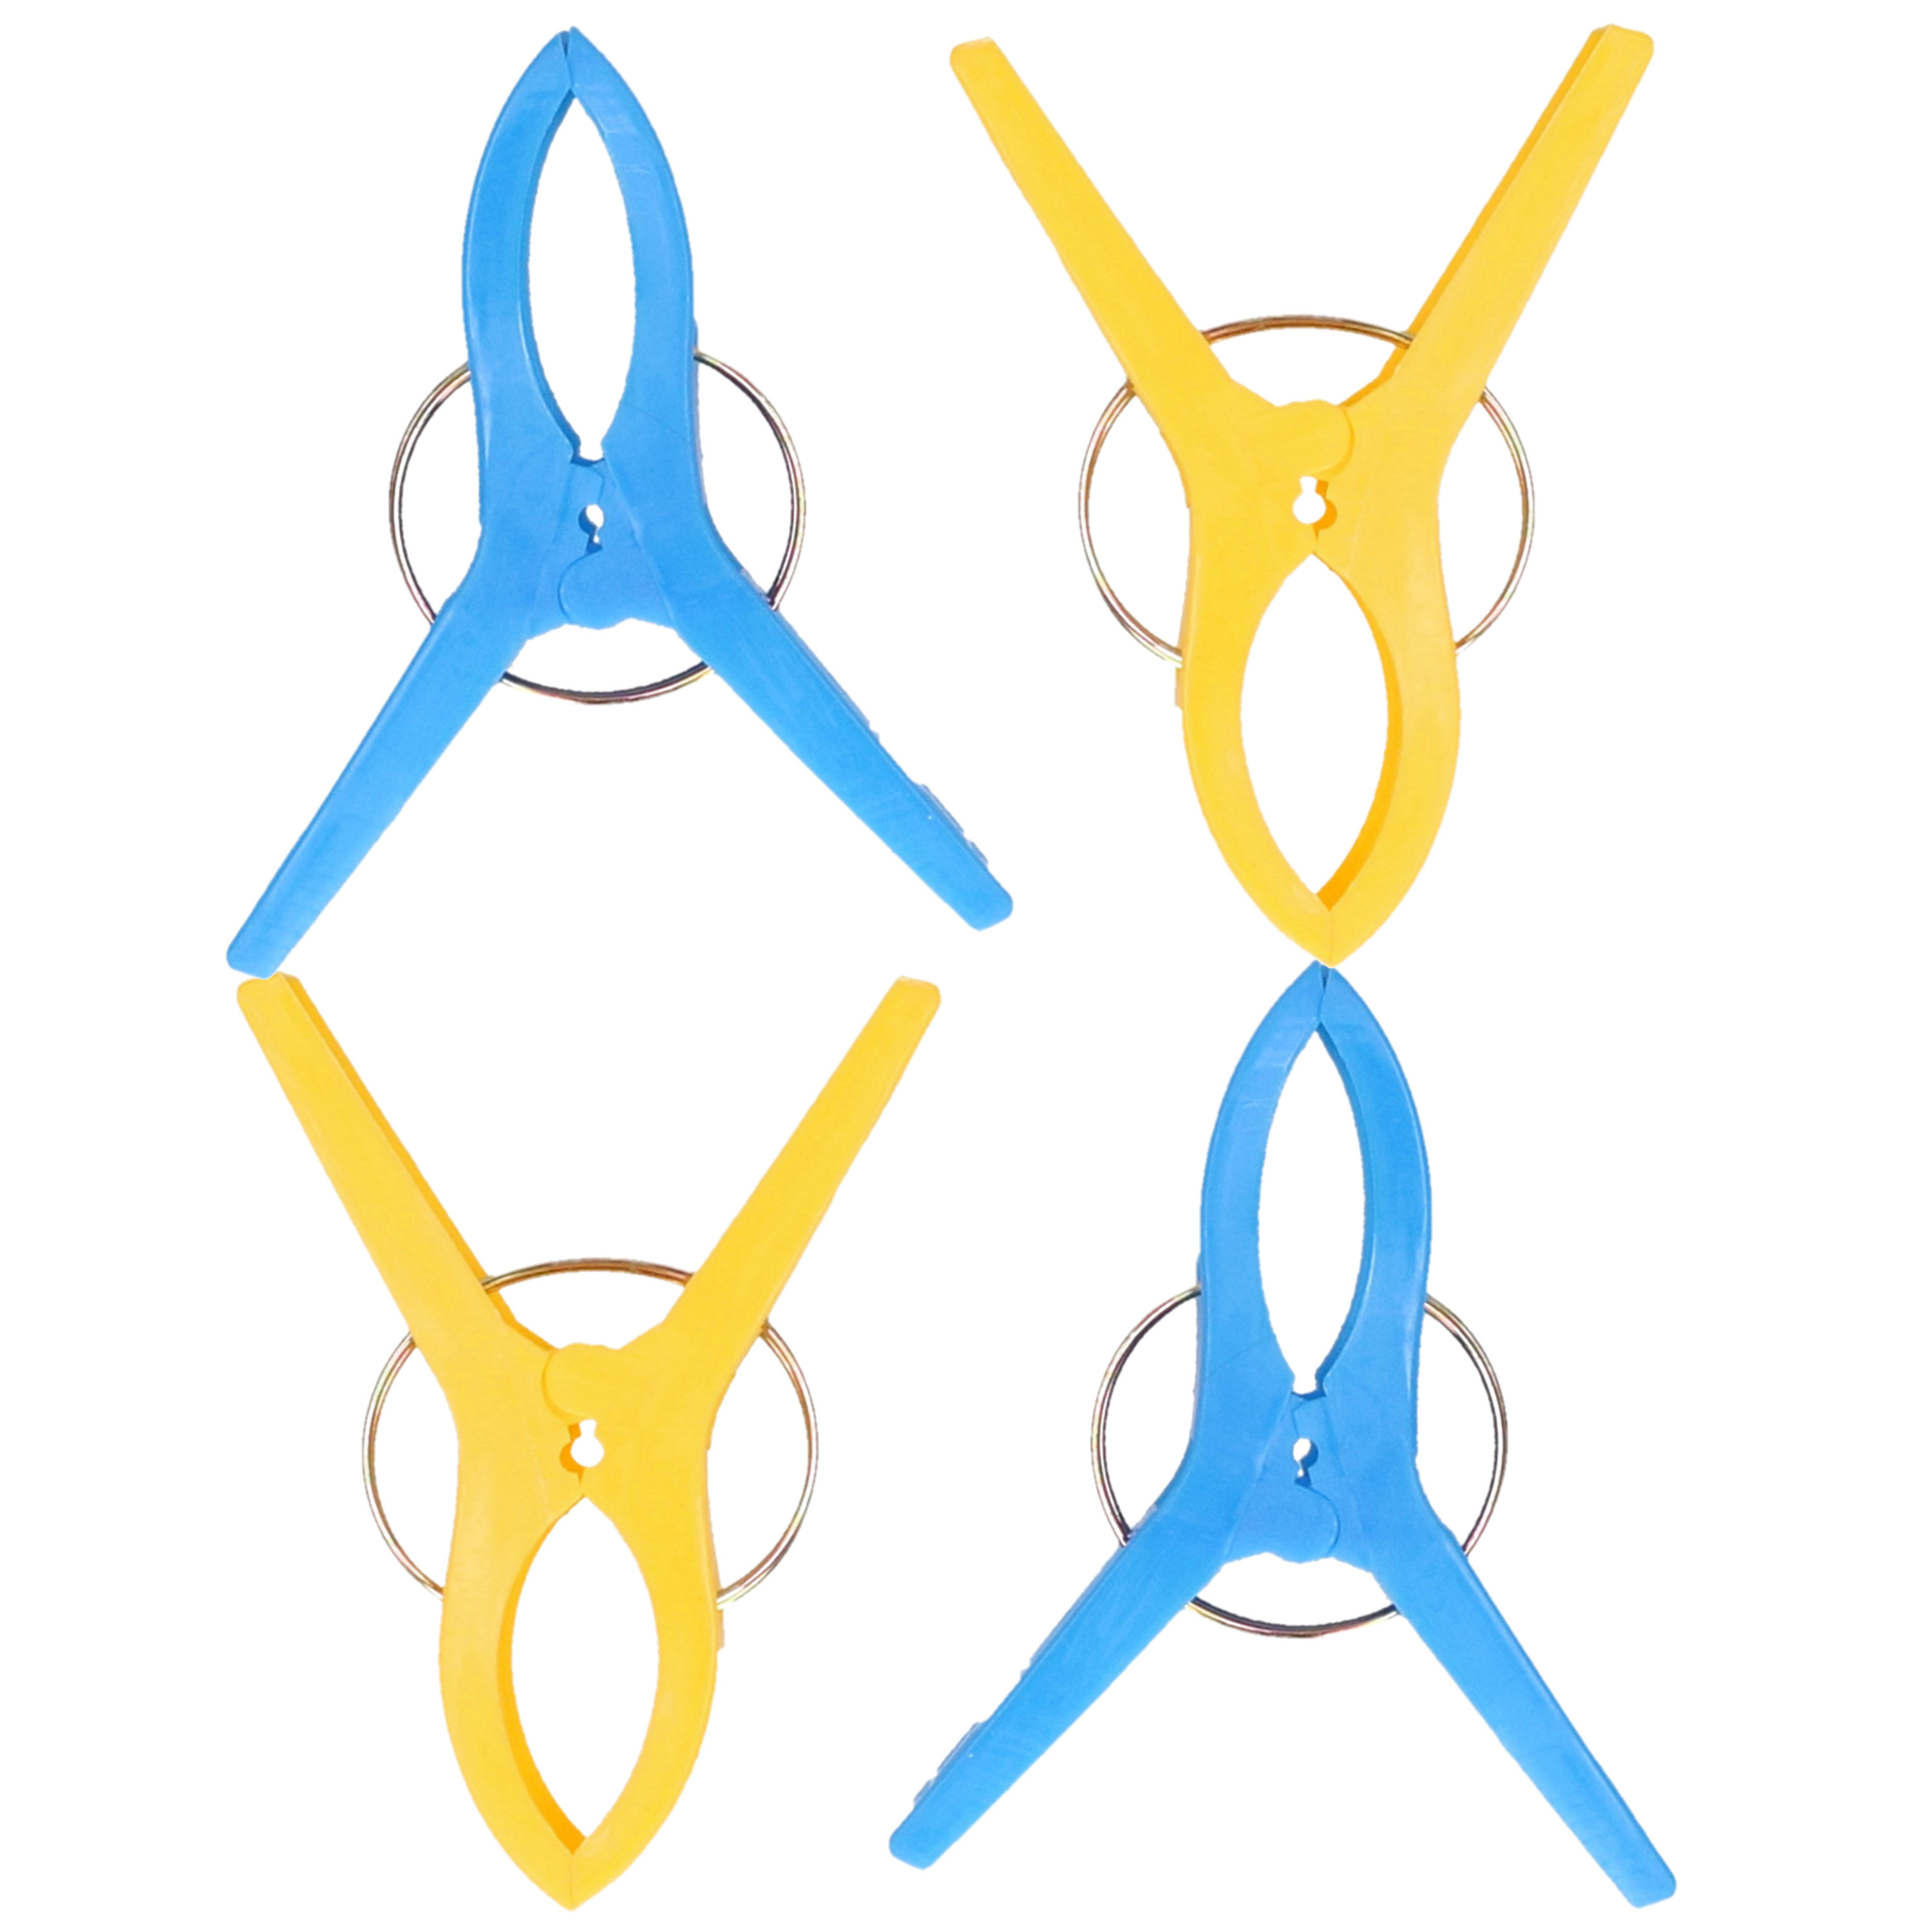 Jedermann Handdoekknijpers XL 4x blauw-geel kunststof 12 cm